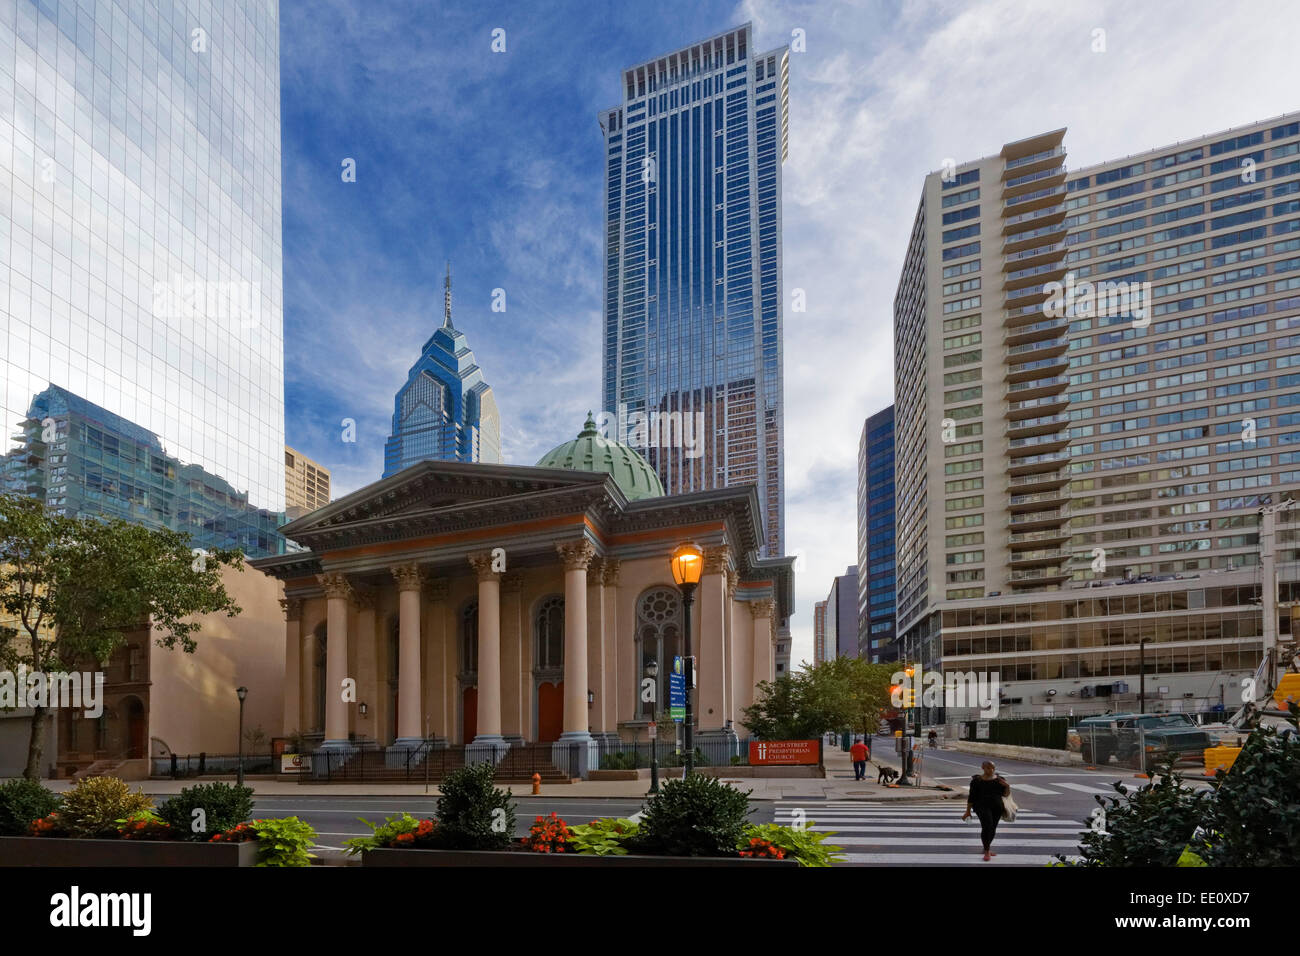 Downtown Philadelphia, Pennsylvania Stock Photo